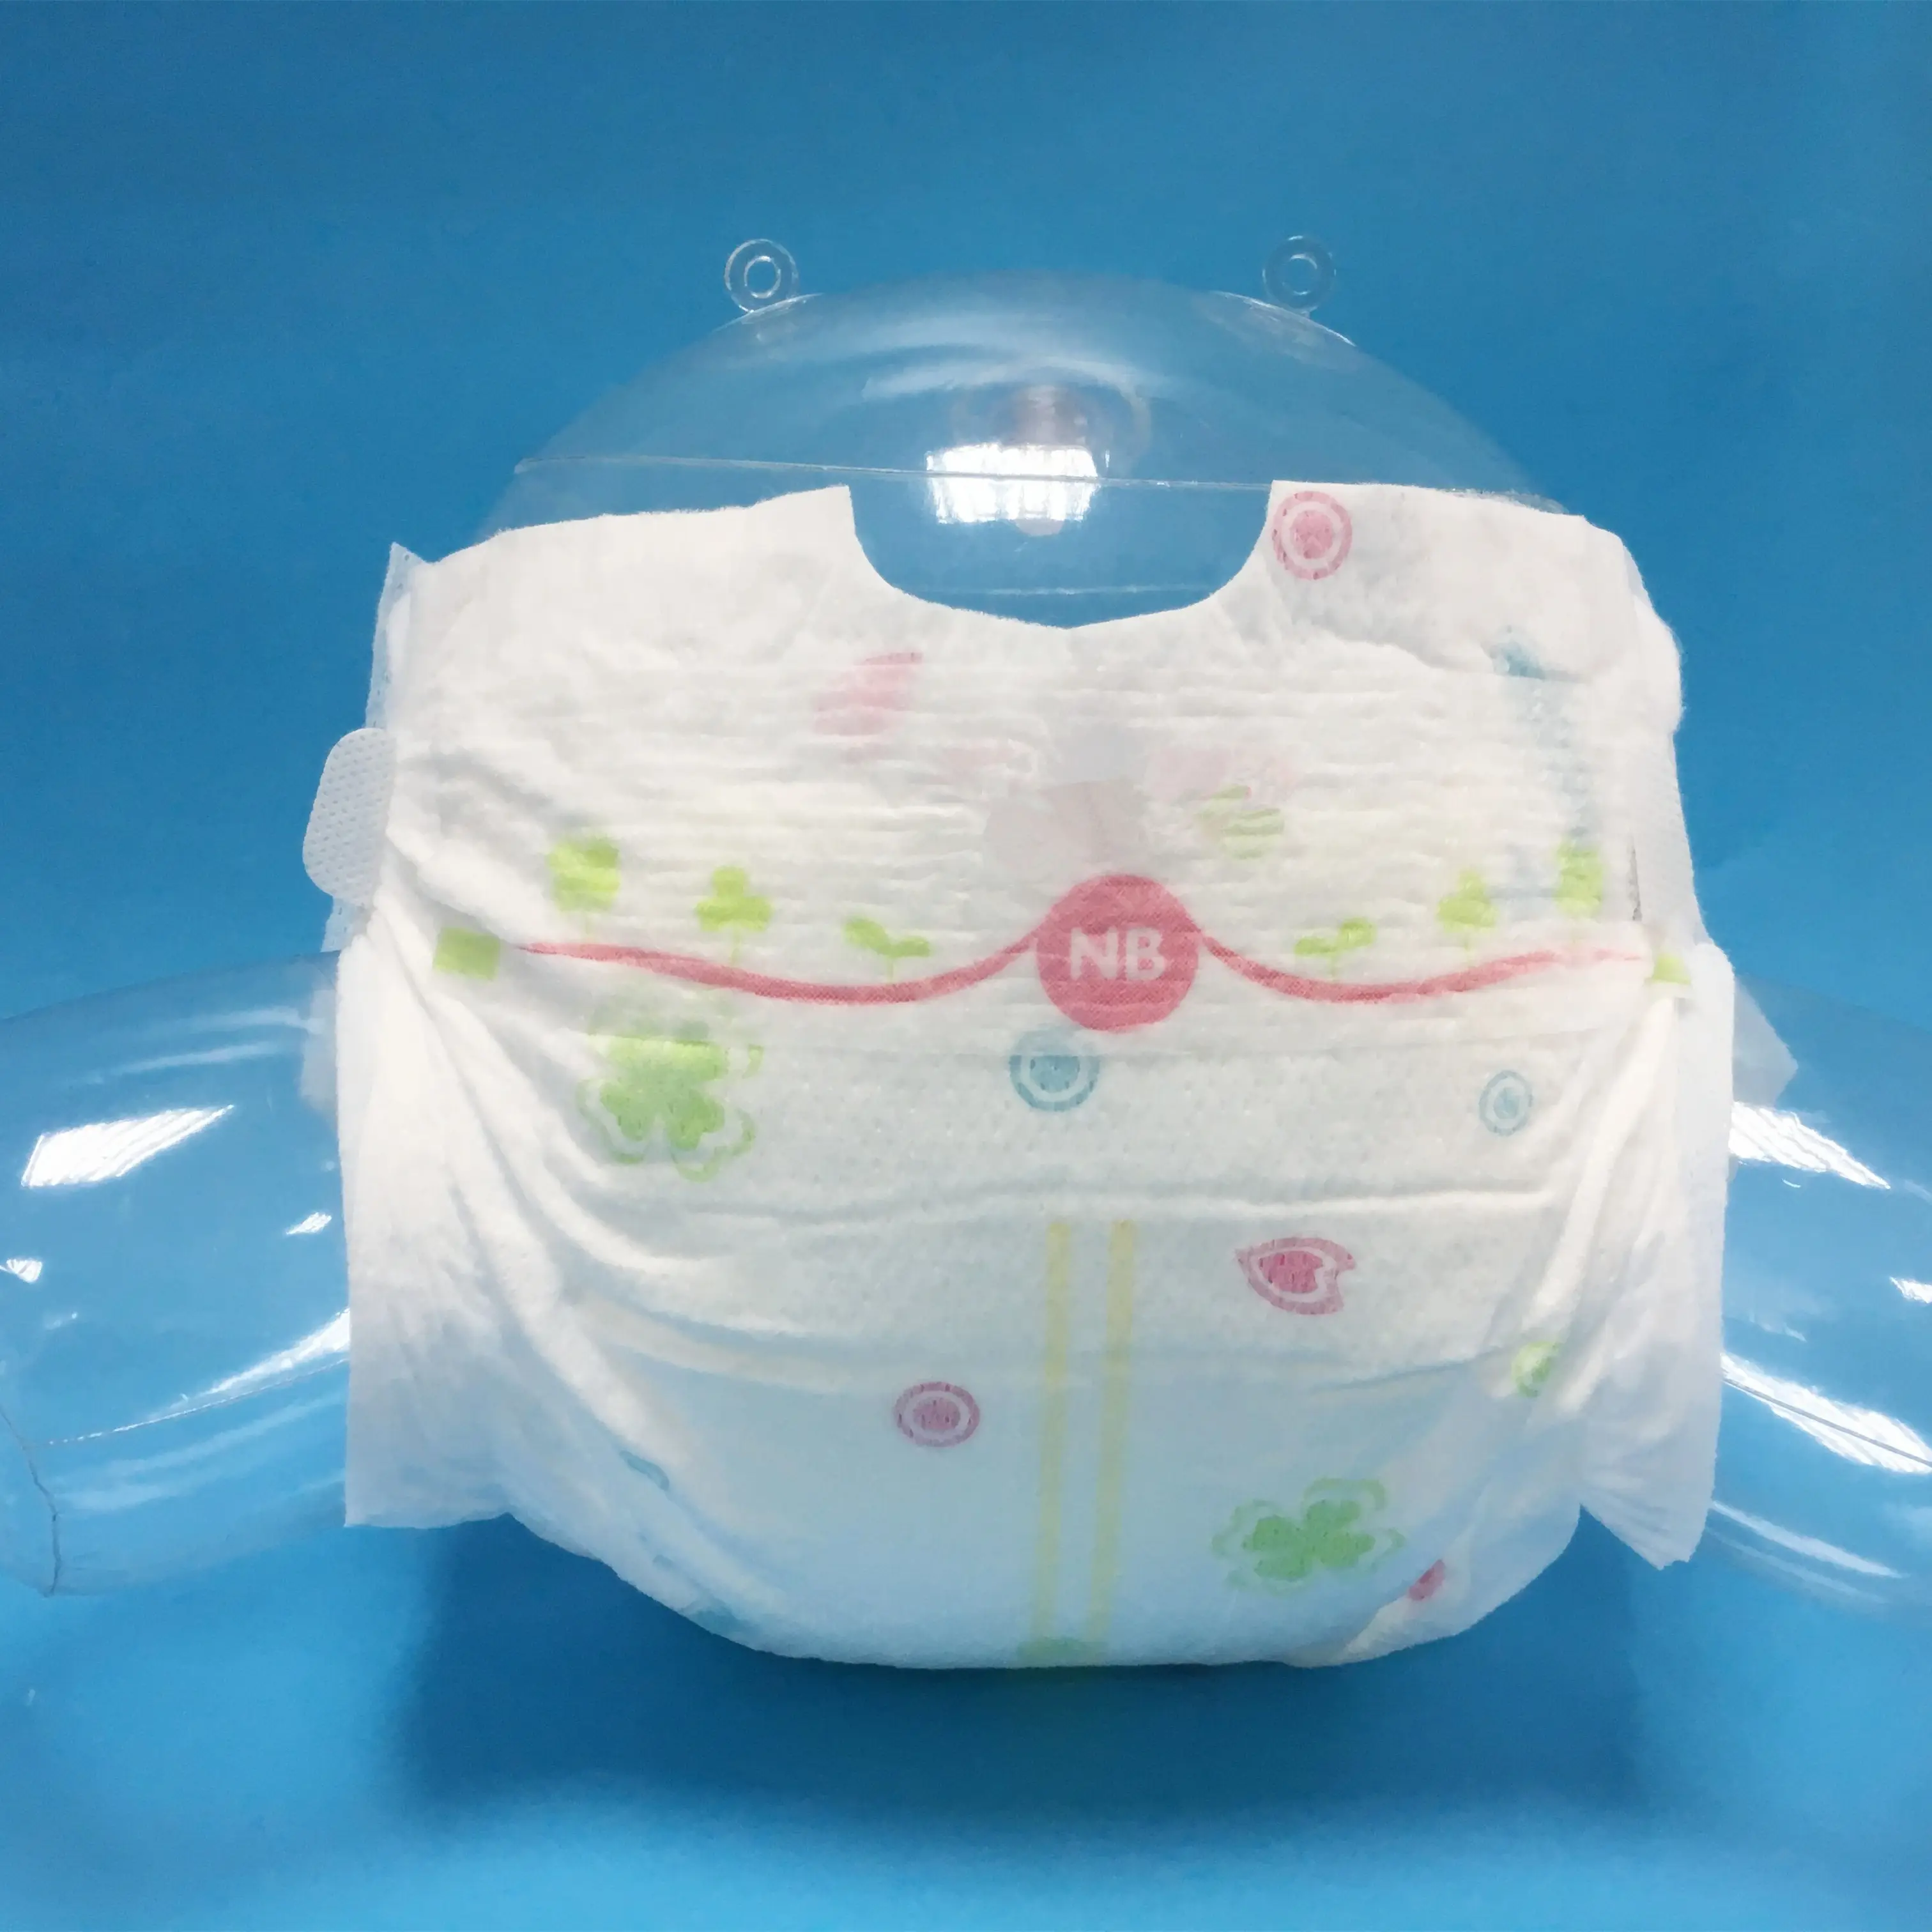 OEM/ODM, фабричные детские подгузники, одноразовые детские подгузники для новорожденных, китайский производитель